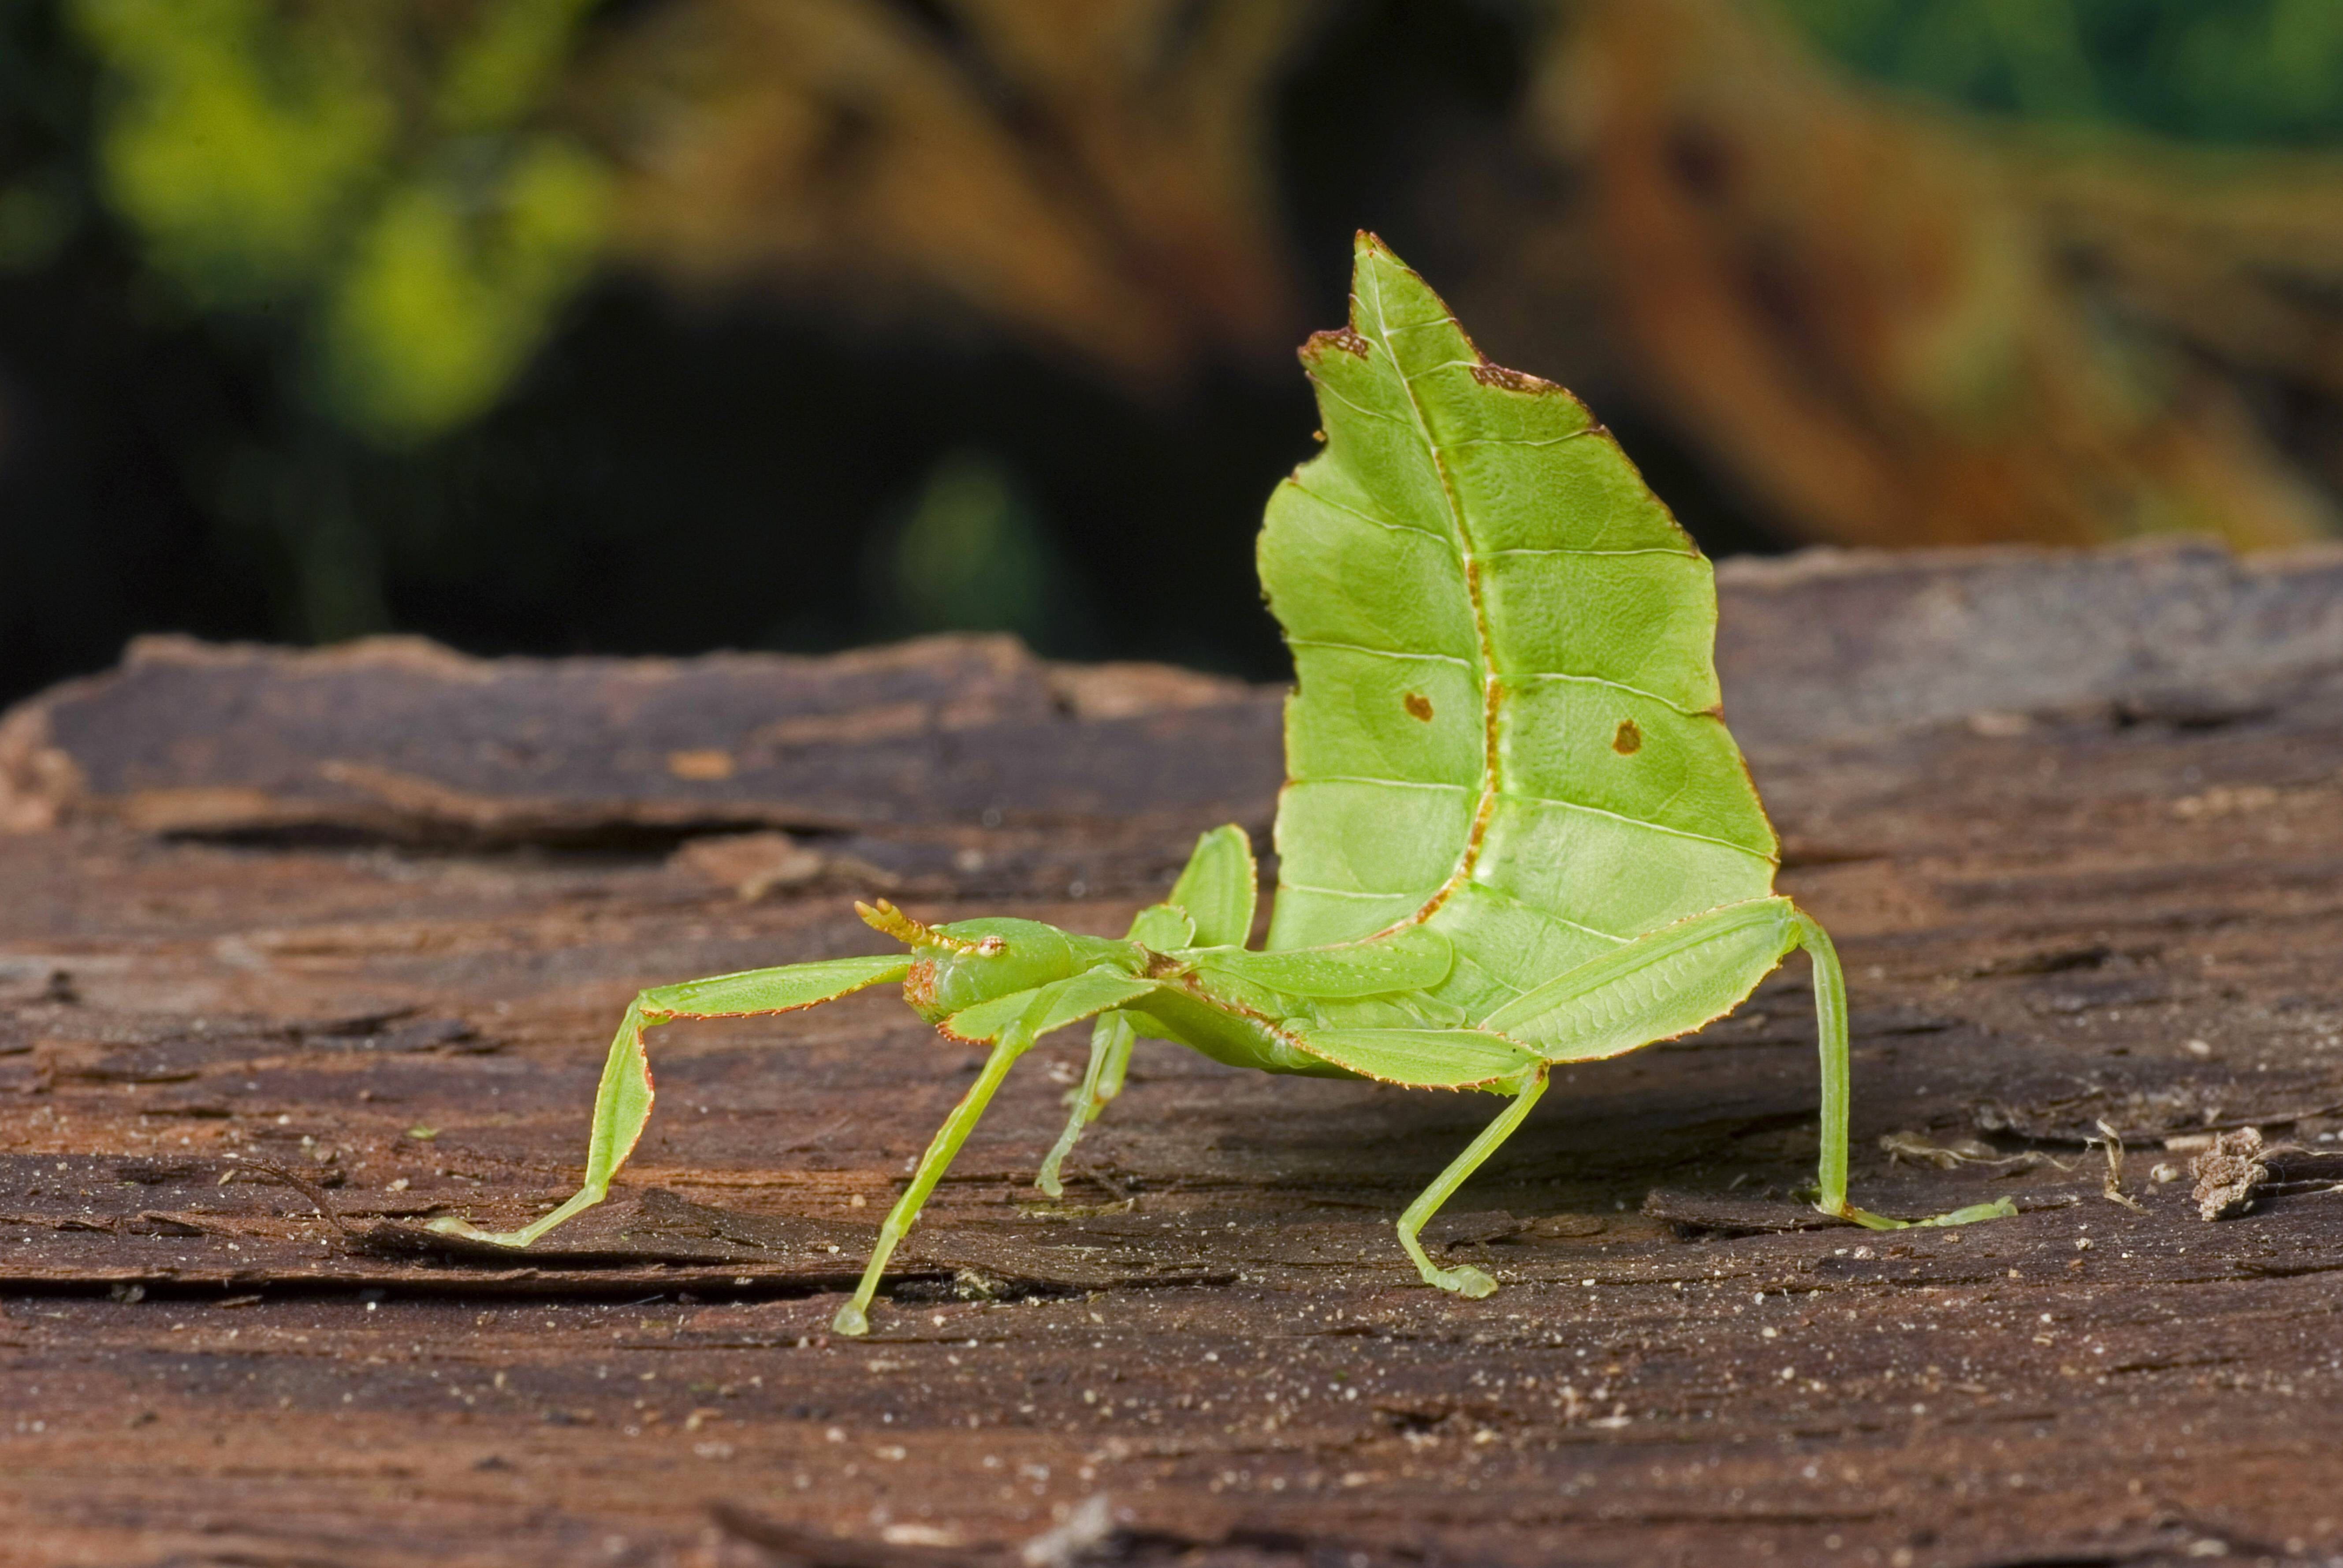 Oh Schreck, ein wandelndes Blatt! Diese Gespenstschrecke ist sogar nach ihrem Aussehen benannt: Wandelndes Blatt. Das Insekt schützt sich vor Fressfeinden mit einem Körper, der wie ein Blatt geformt und gefärbt ist.